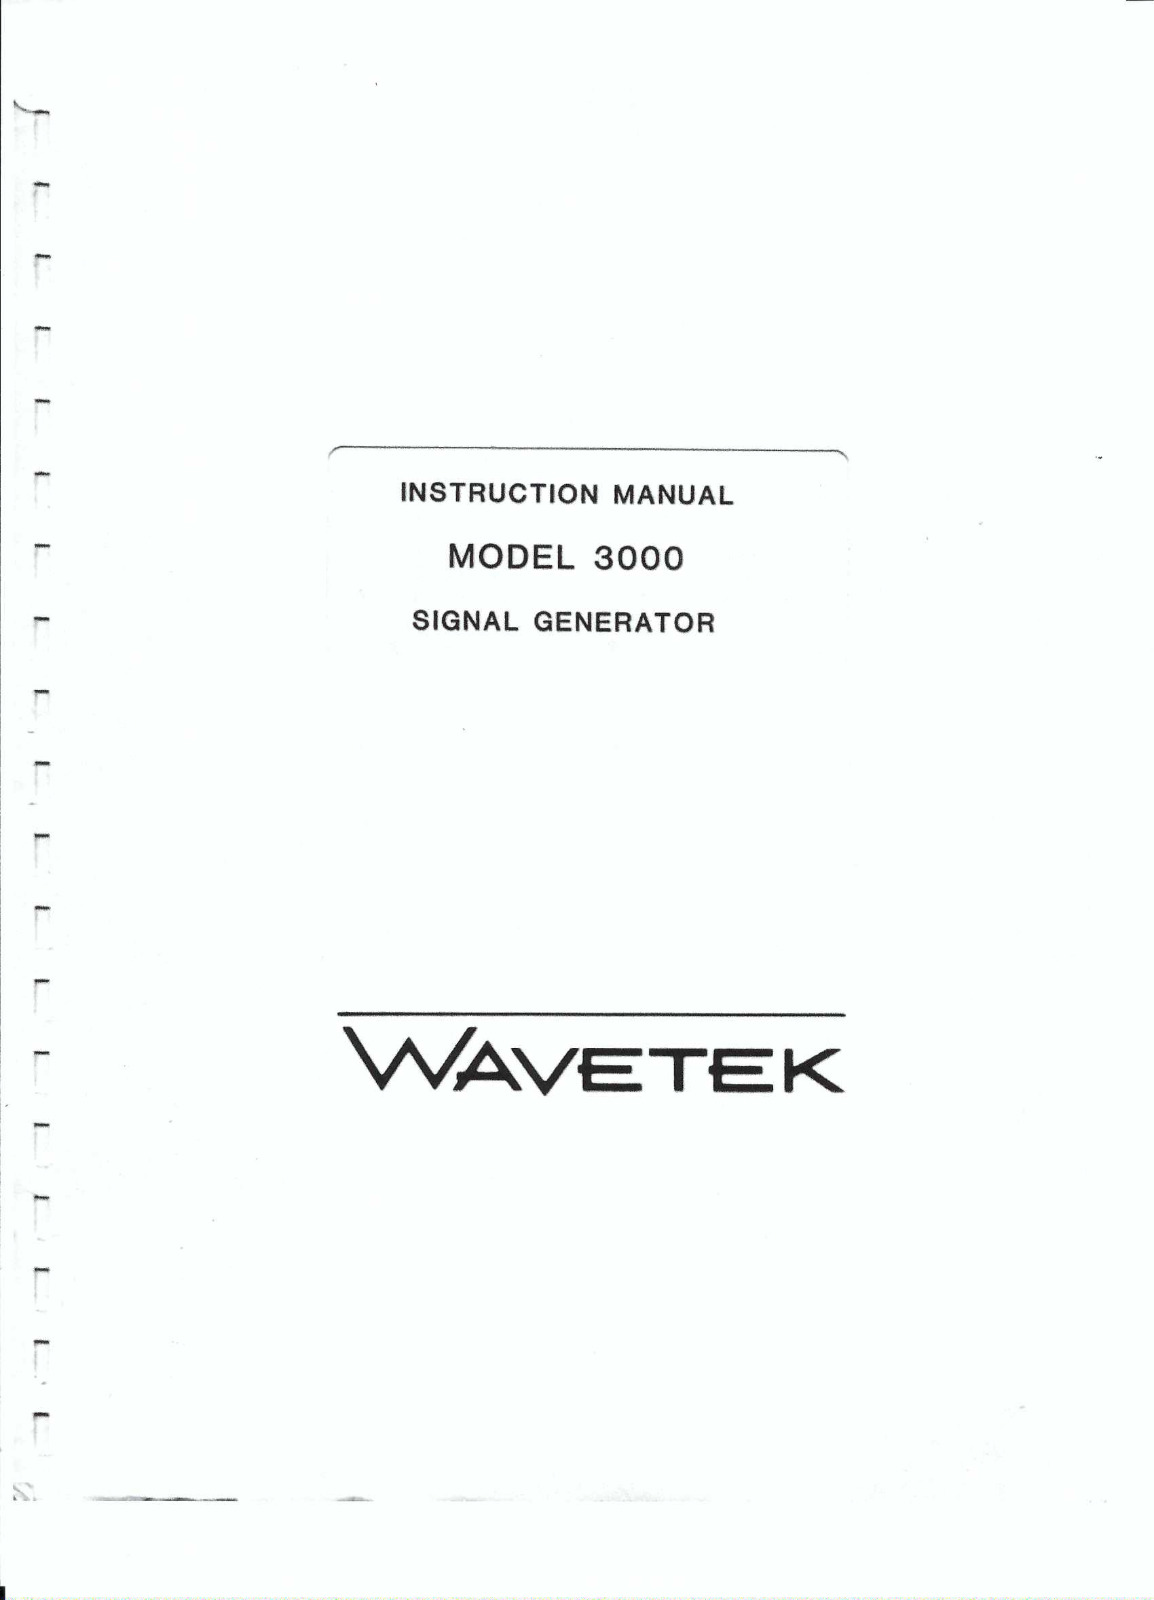 Instrukcja obsługi WAVETEK dla modelu generatora sygnału 3000 jako *PDF